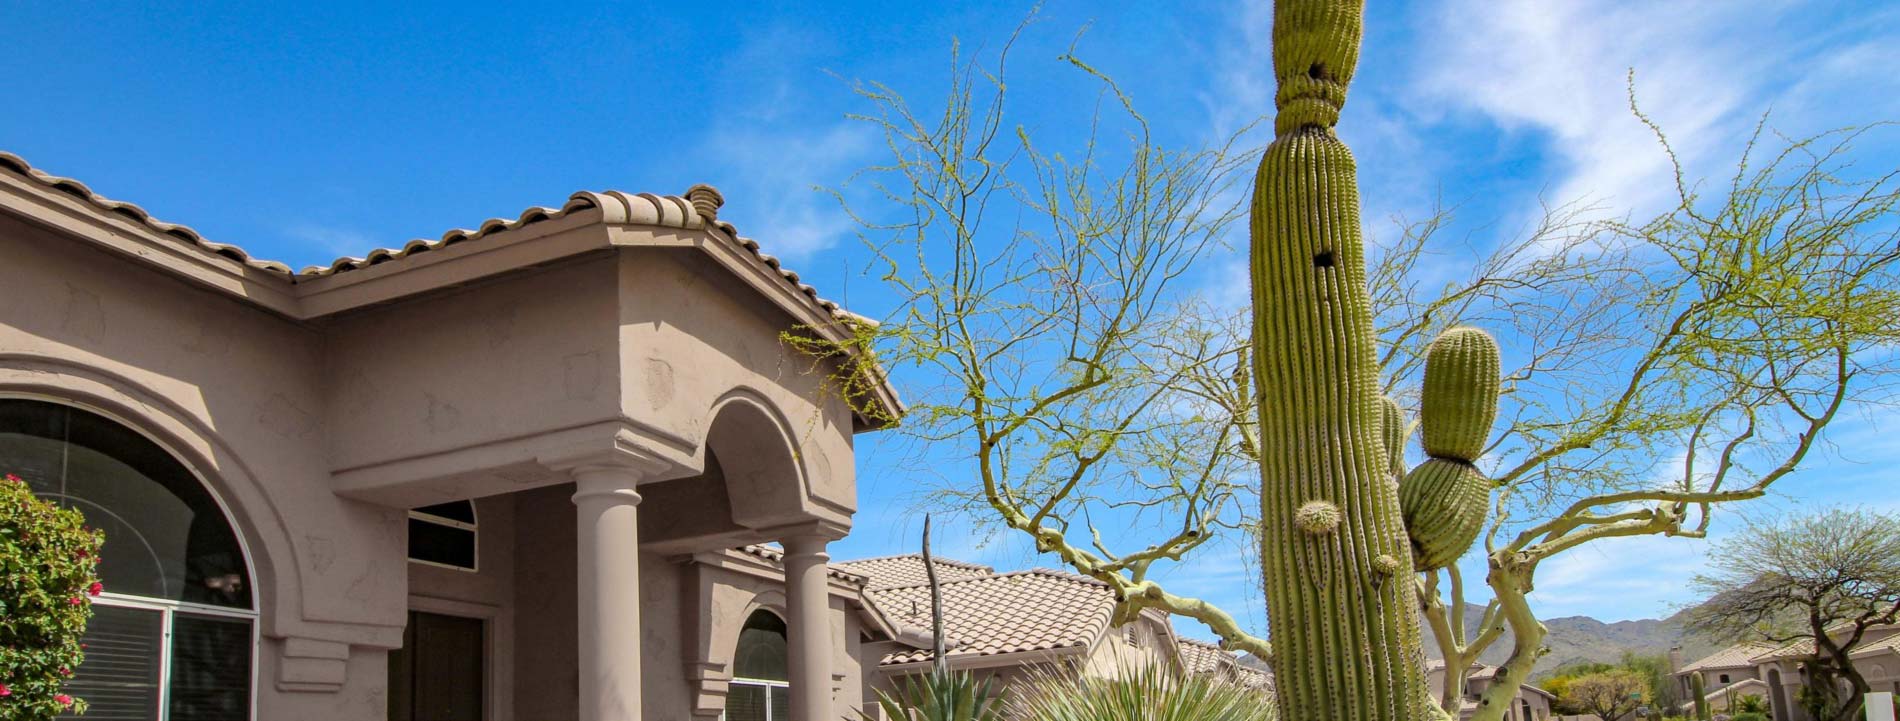 Home in Arizona with Saguaro